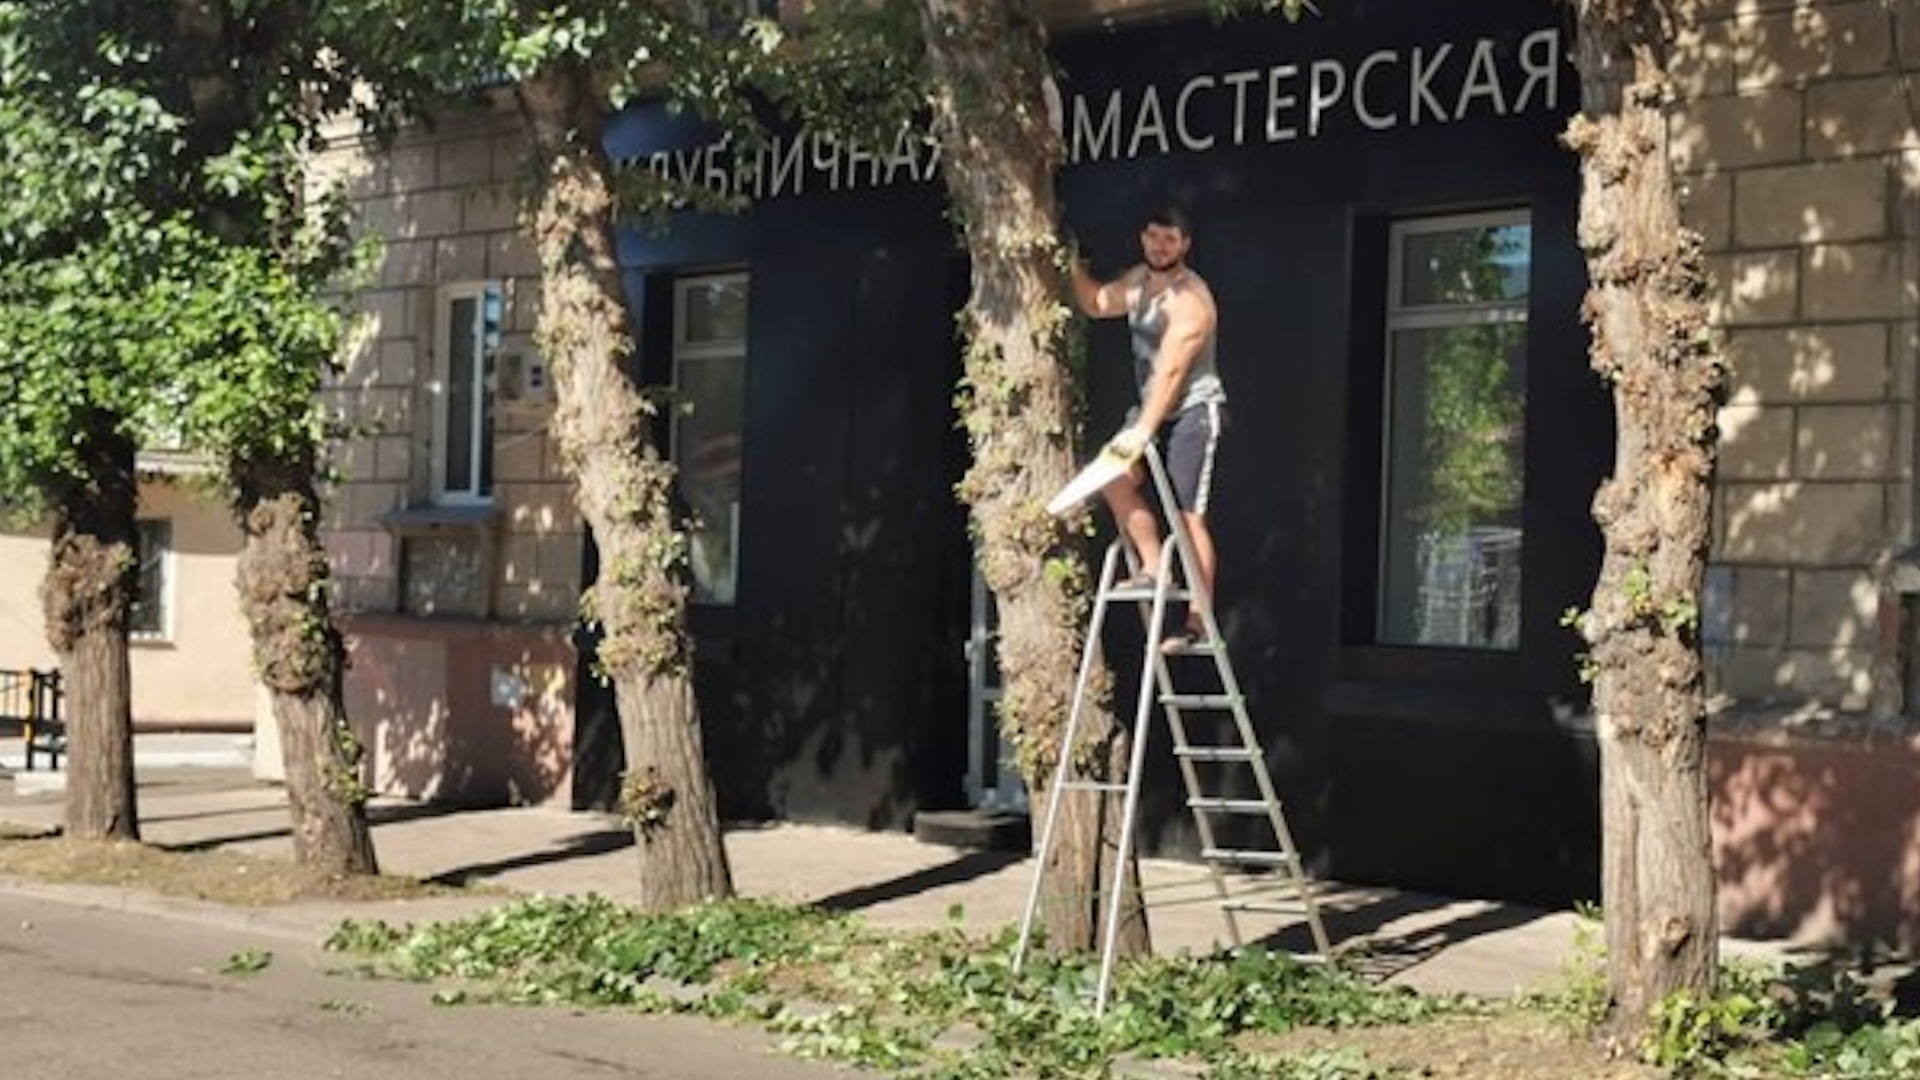 Красноярец обрезал тополь, чтобы было видно вывеску магазина